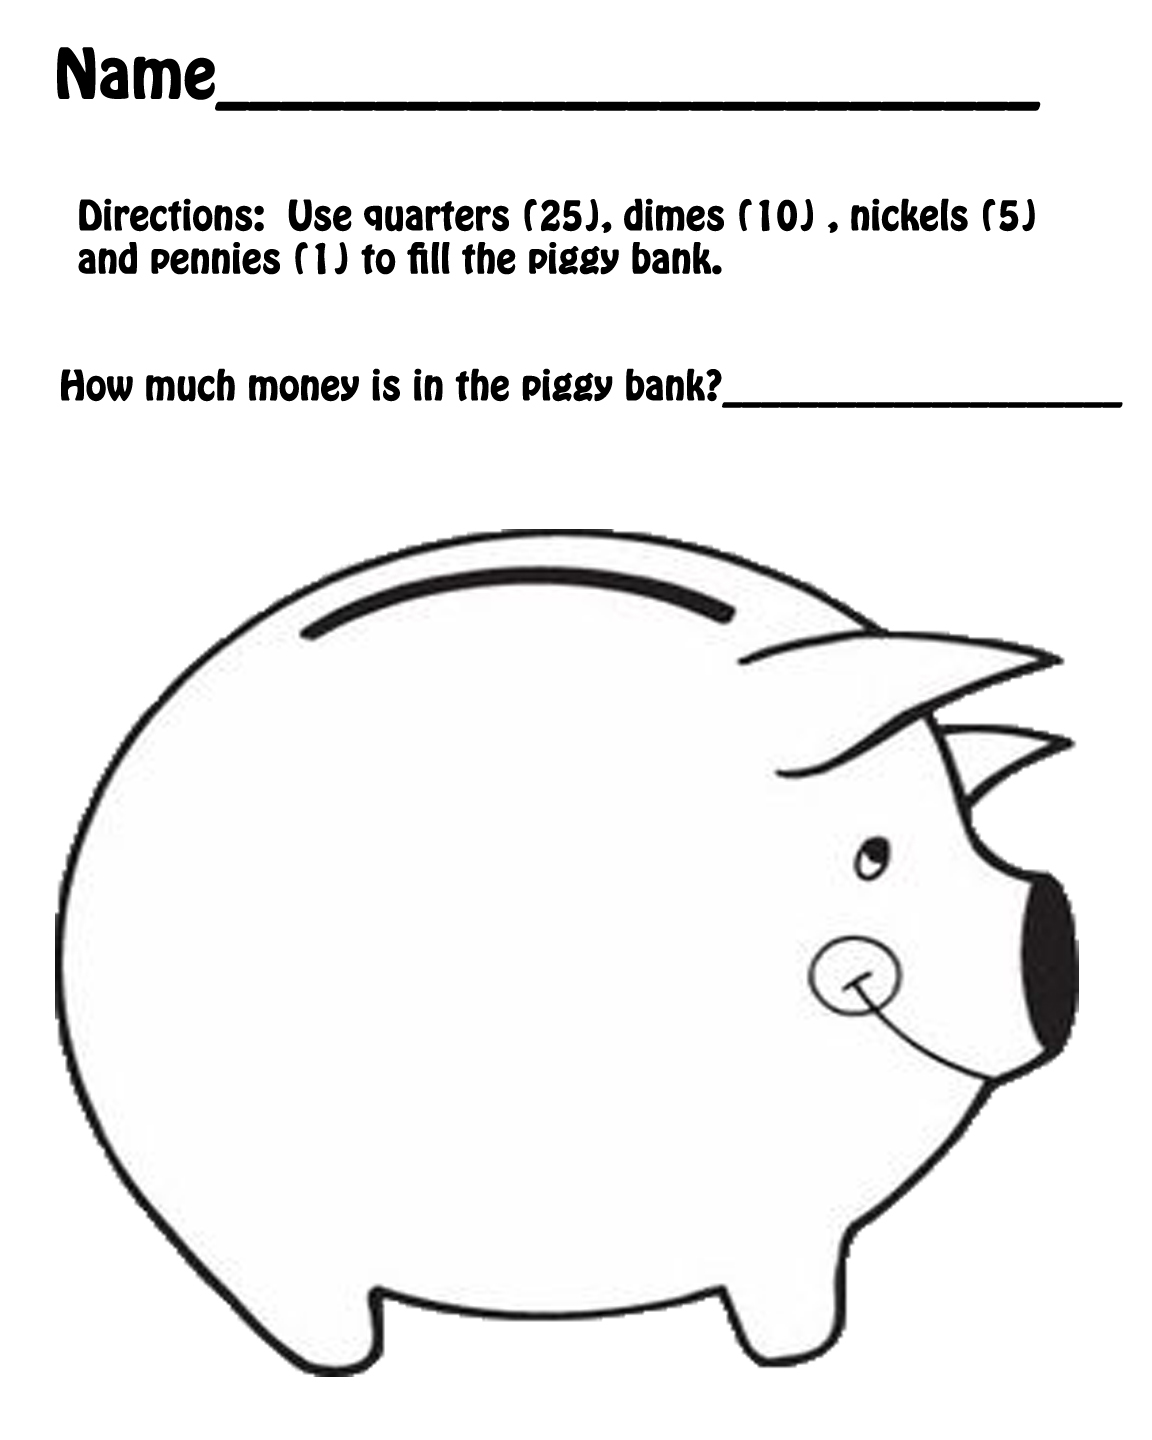 Hands On Teaching: Piggy Bank Math - StartsAtEight